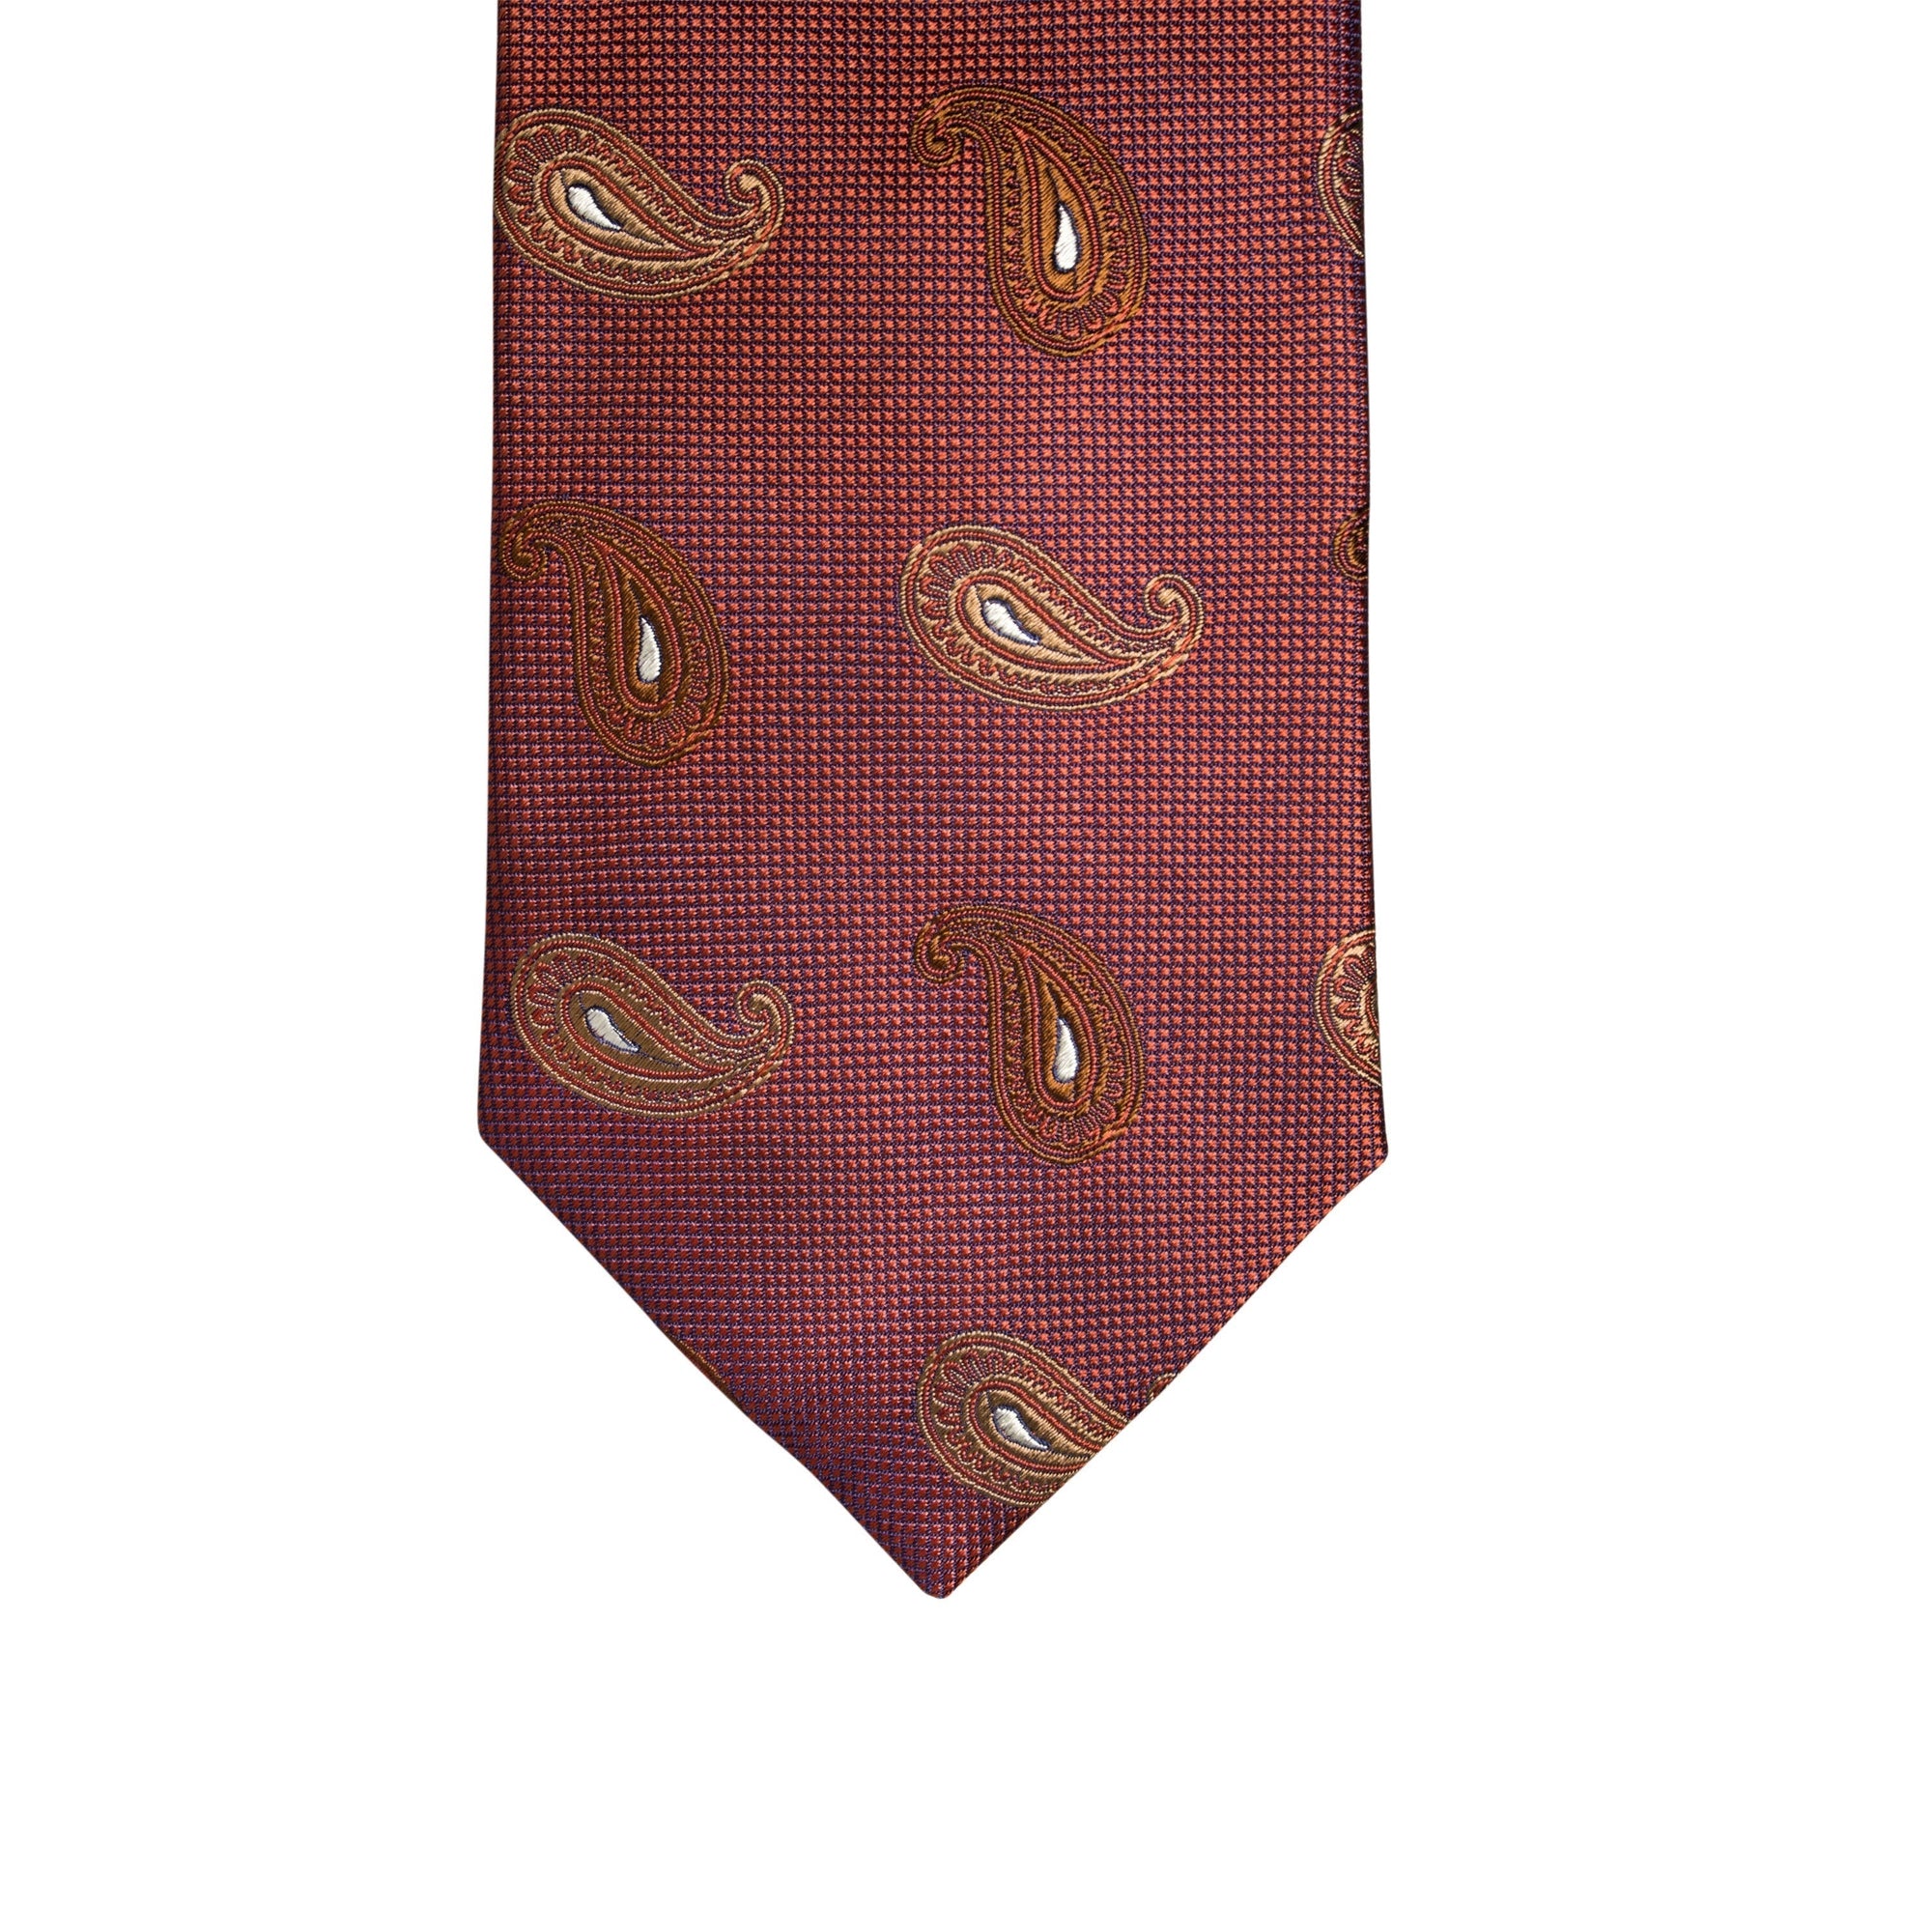 Church's Silk Woven Parsley Pattern Necktie in Red-Cufflinks.com.sg | Neckties.com.sg